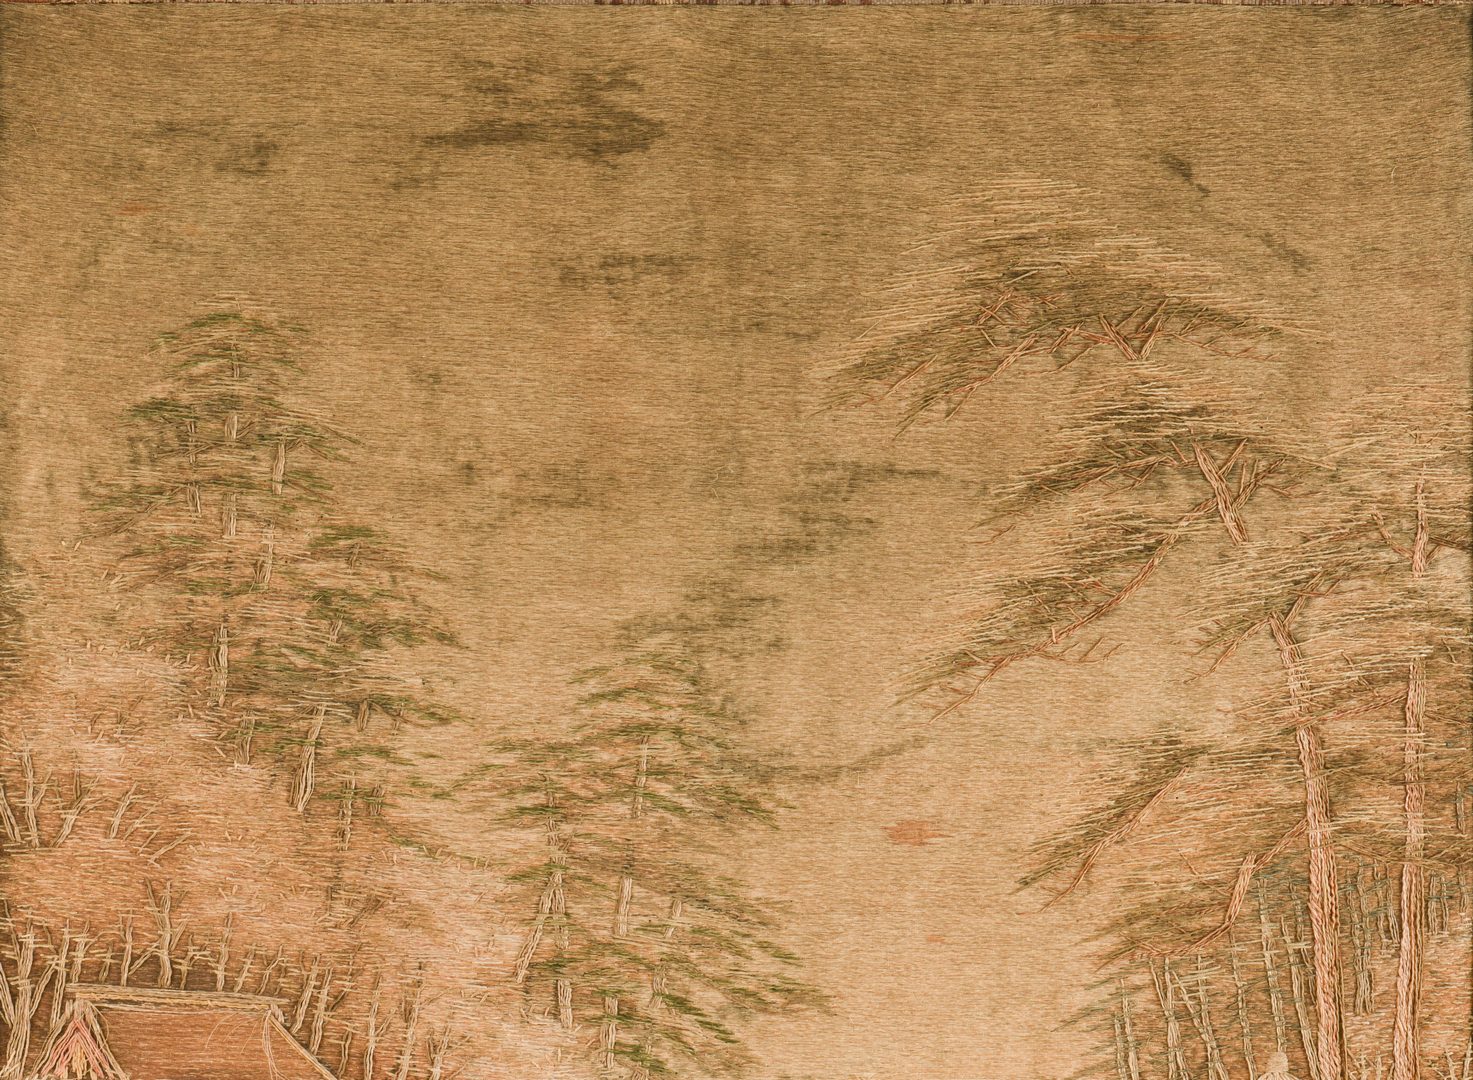 Lot 605: Meiji Embroidered Landscape Panel